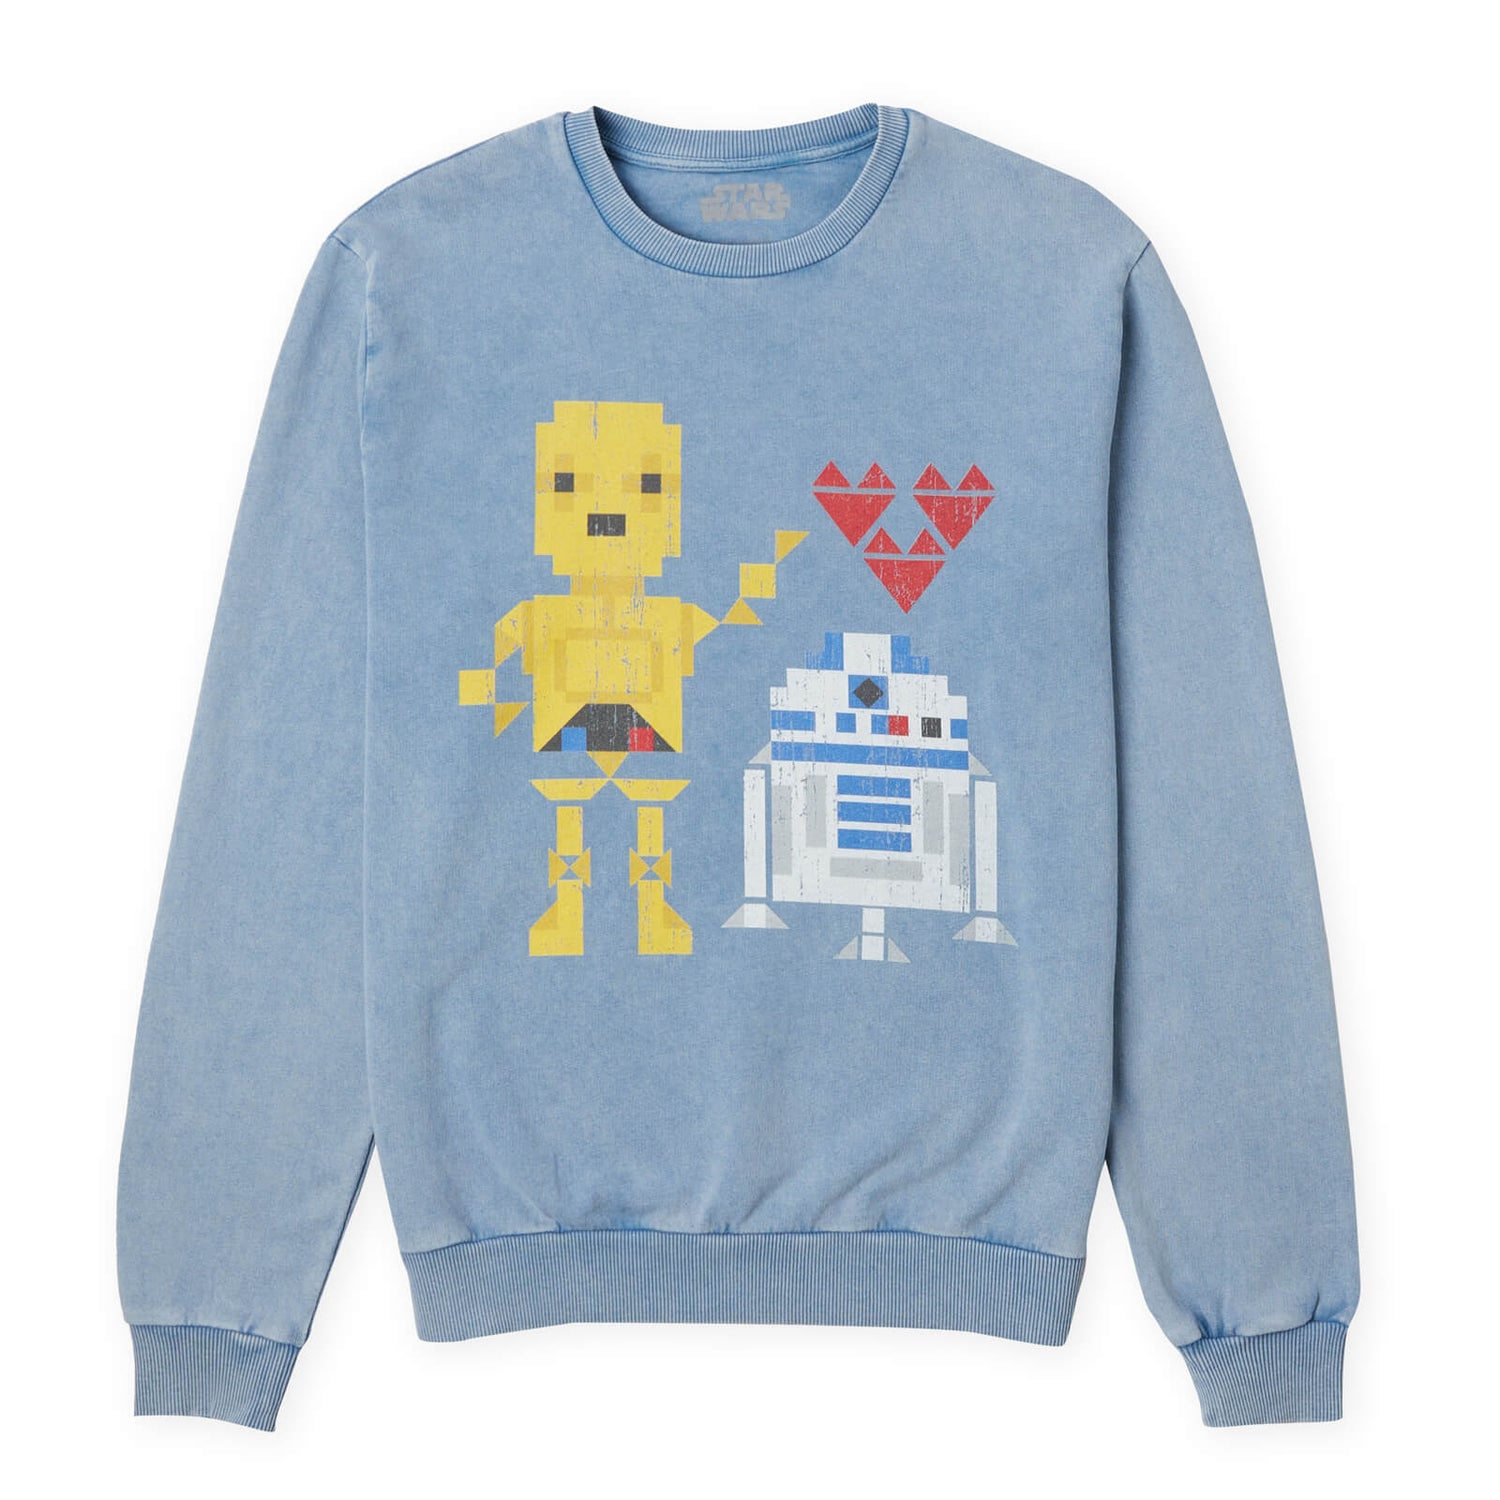 Star Wars Friendship Sweatshirt - Denim Blue Acid Wash